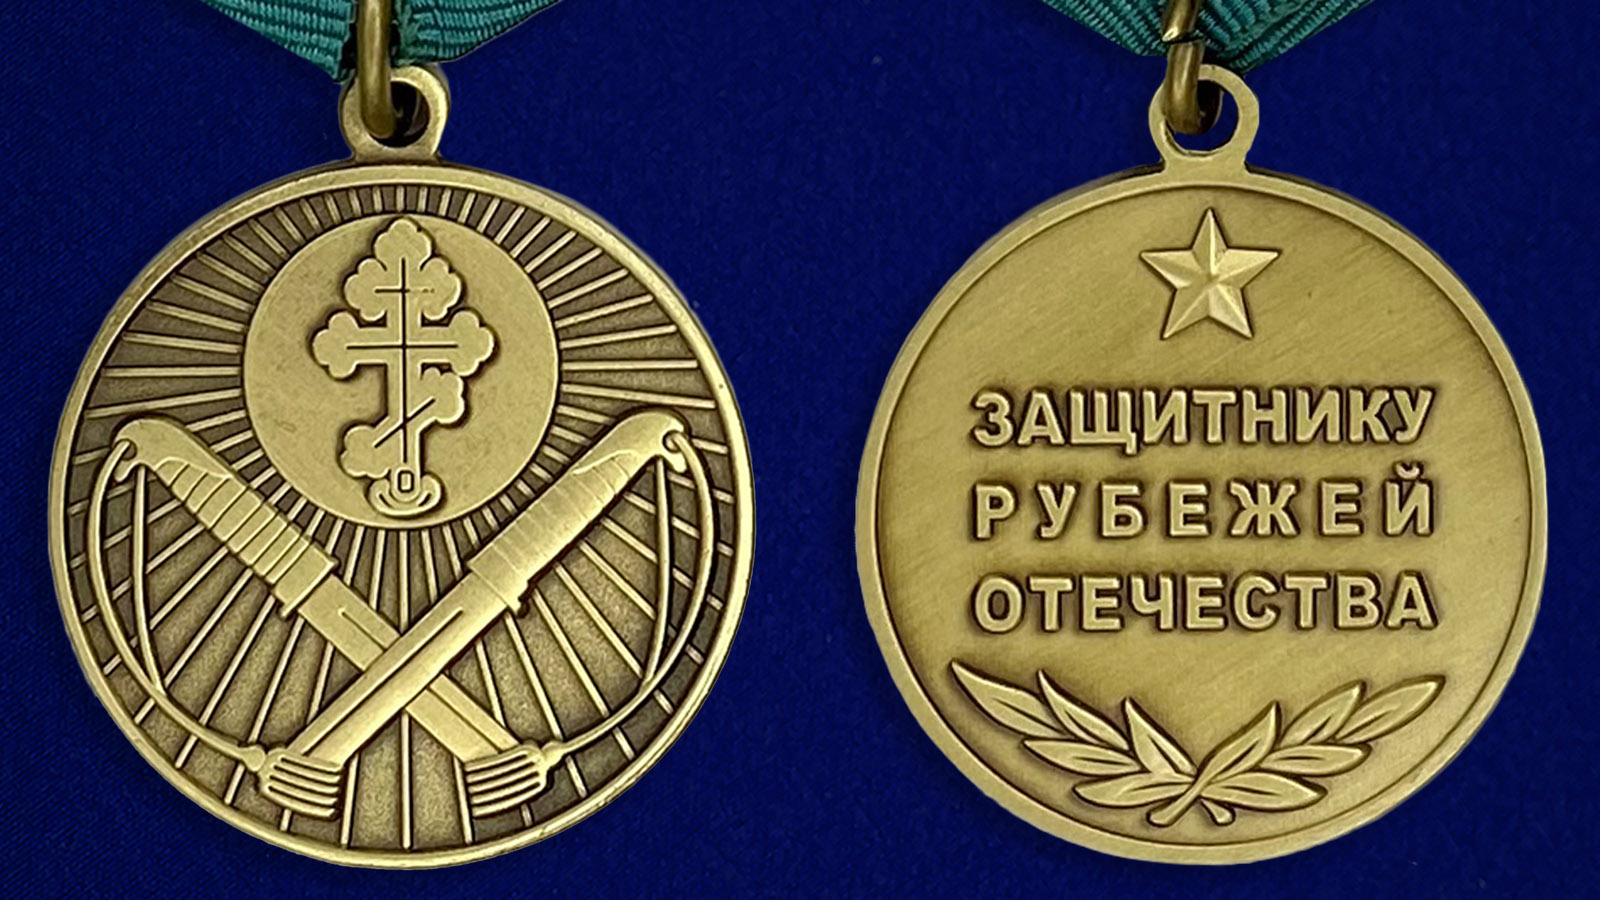 http://image.voenpro.ru/medal-zaschitniku-rubezhej-otechestva-5.jpg